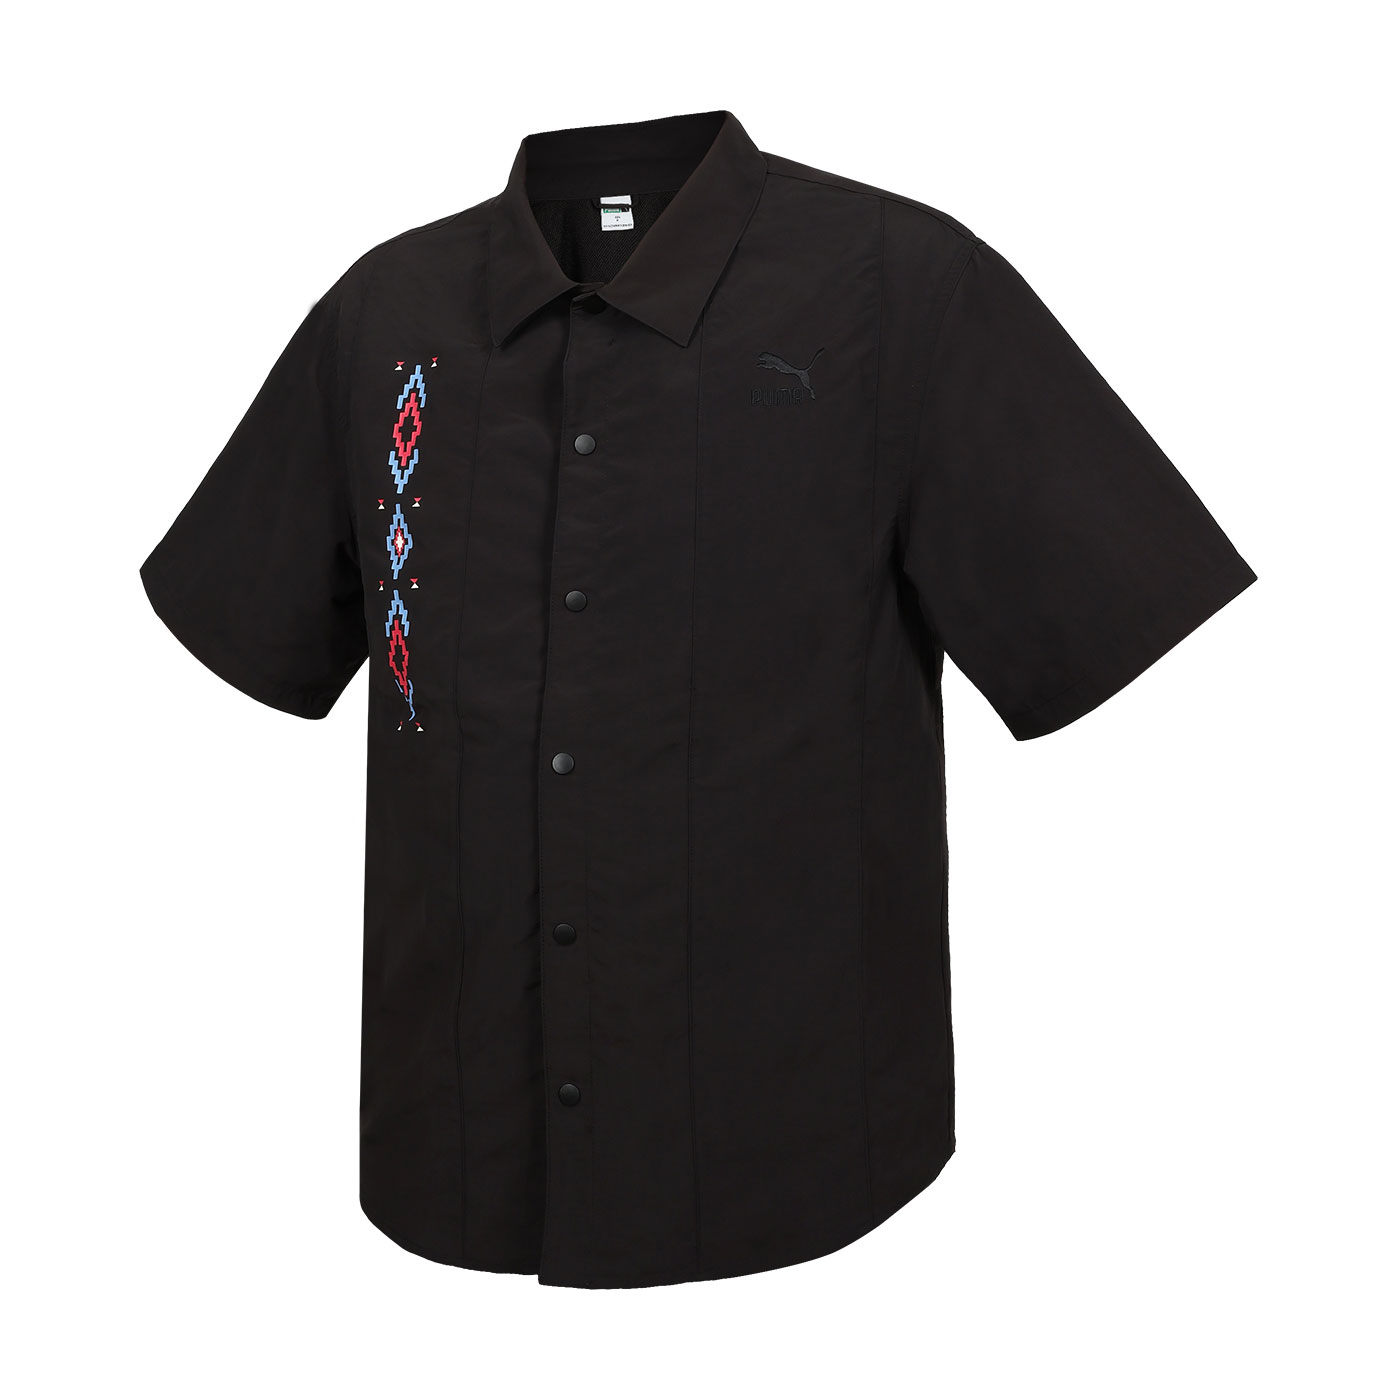 PUMA 男女款流行系列Prairie Resort短袖襯衫  62686701 - 黑